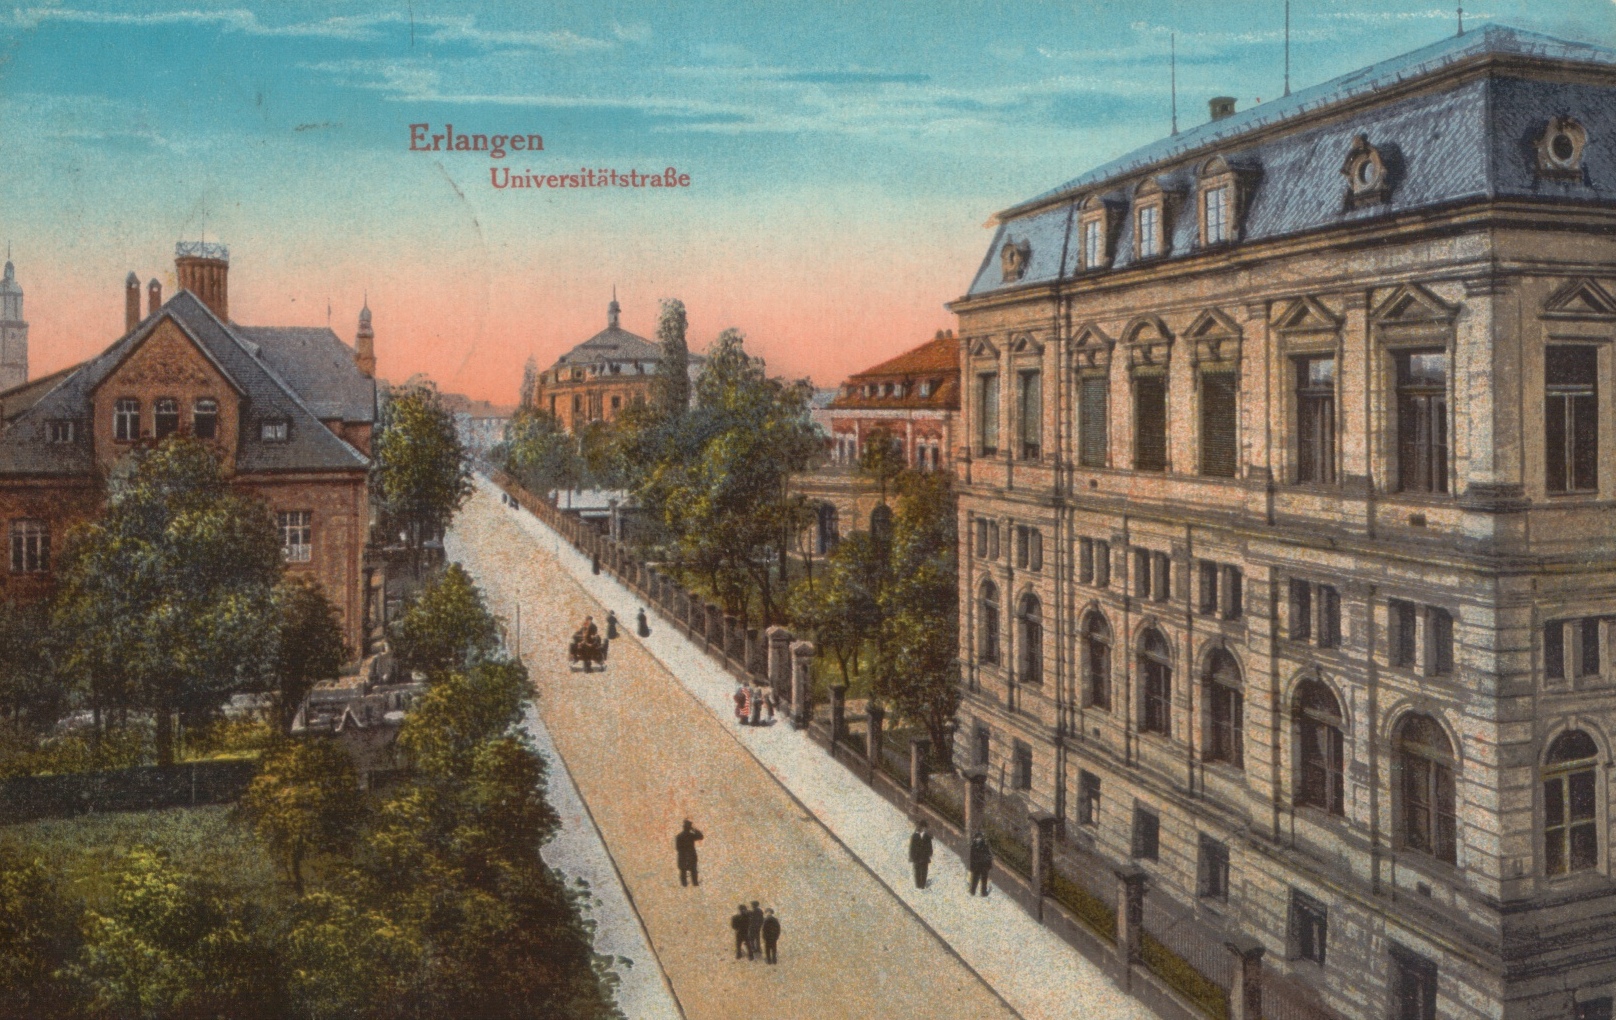 Erlangen 1916 - Universitätsstraße in Erlangen